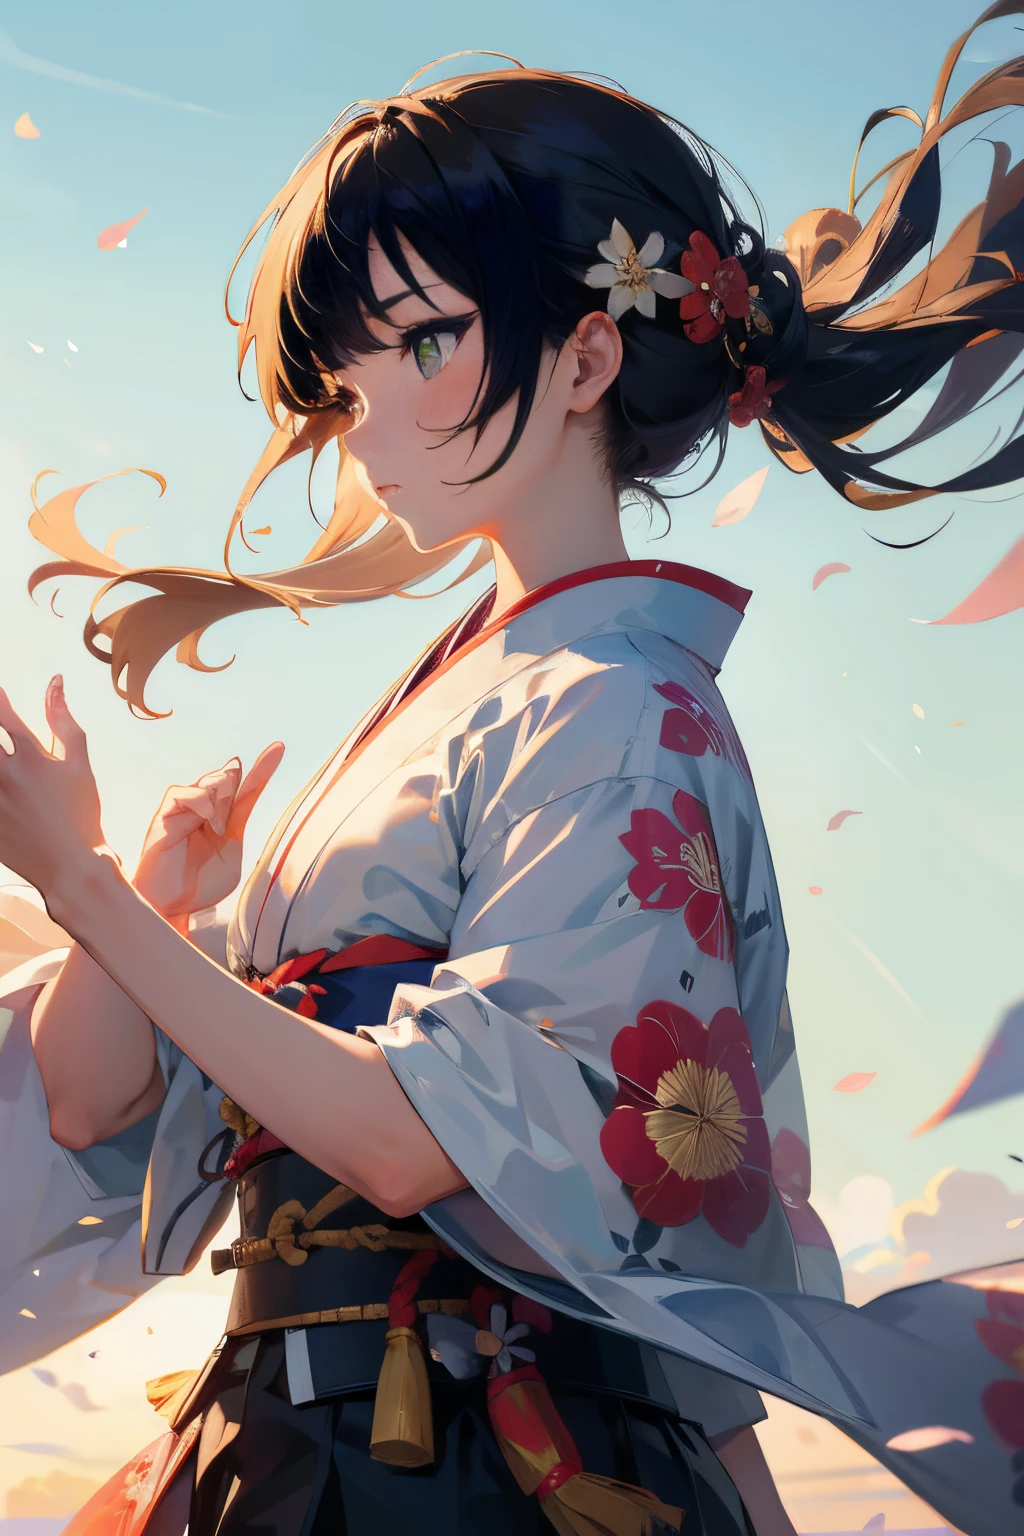 日本女武士拉弓, 在風中吹, (最好的品質), 精緻美麗的細節,和服,